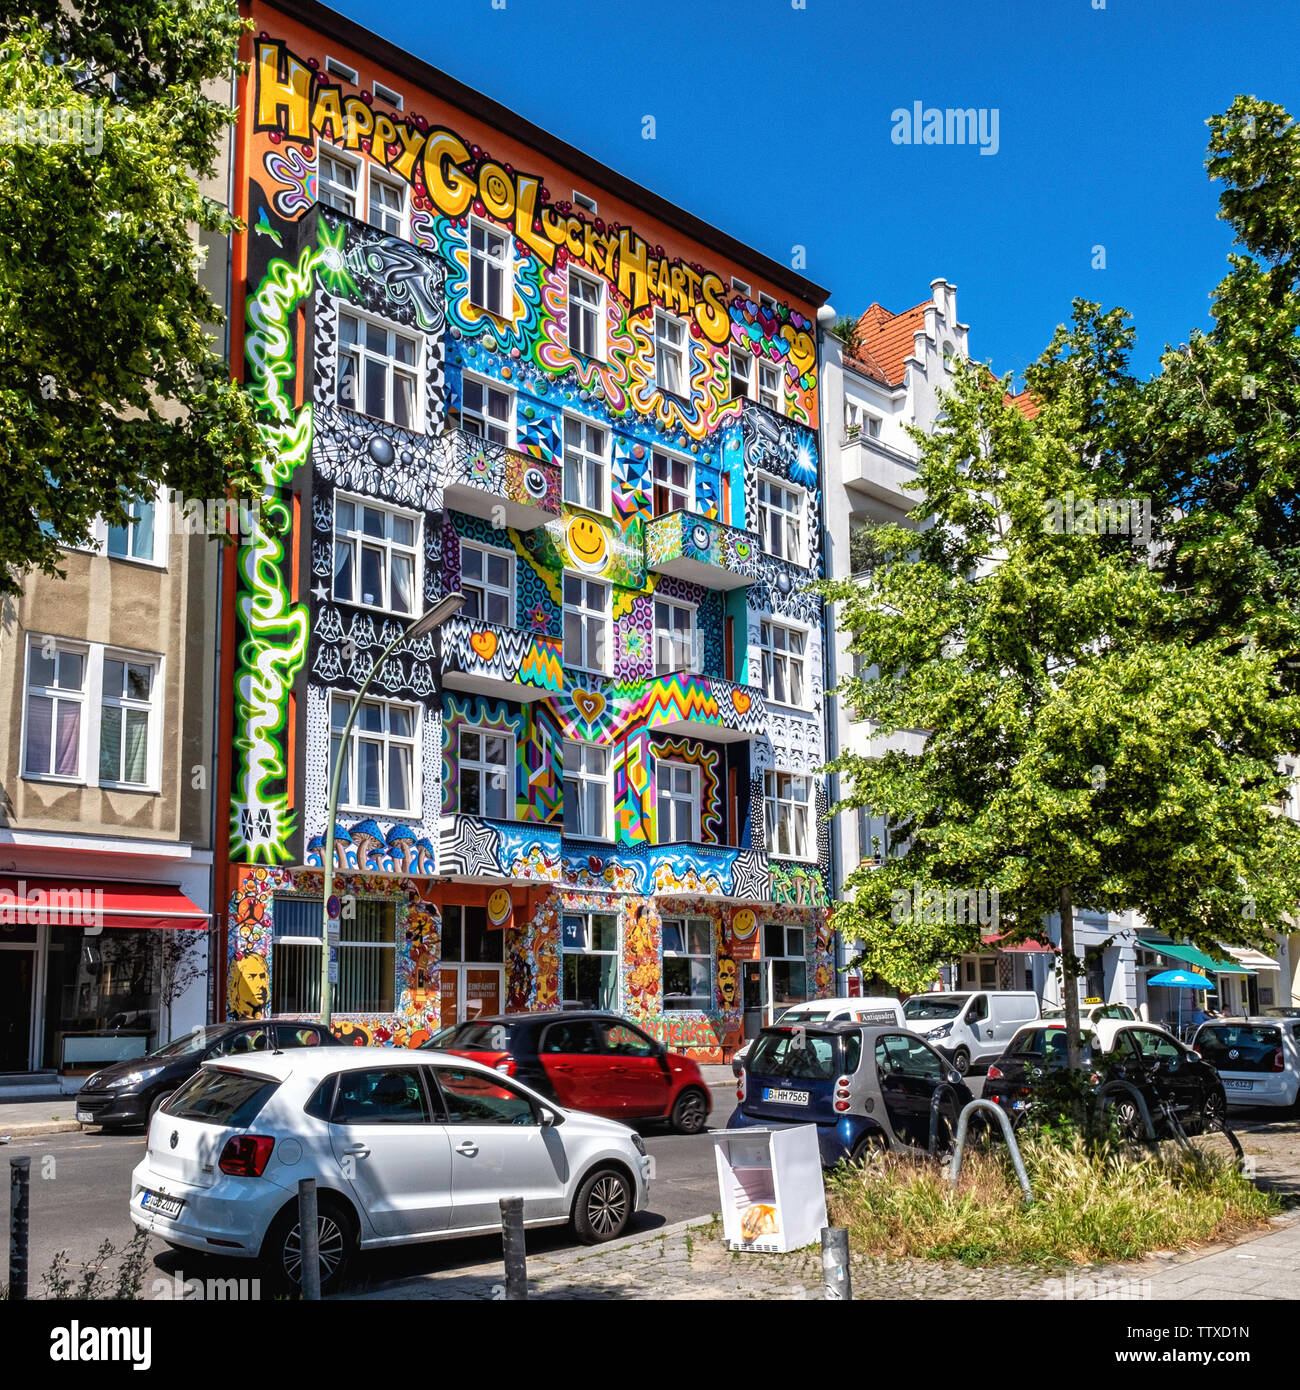 Happygolucky Hotel & Hostel. Colorata facciata esterna di alloggi turistici su Stuttgarter Platz, Charlottenburg-Berlin Foto Stock